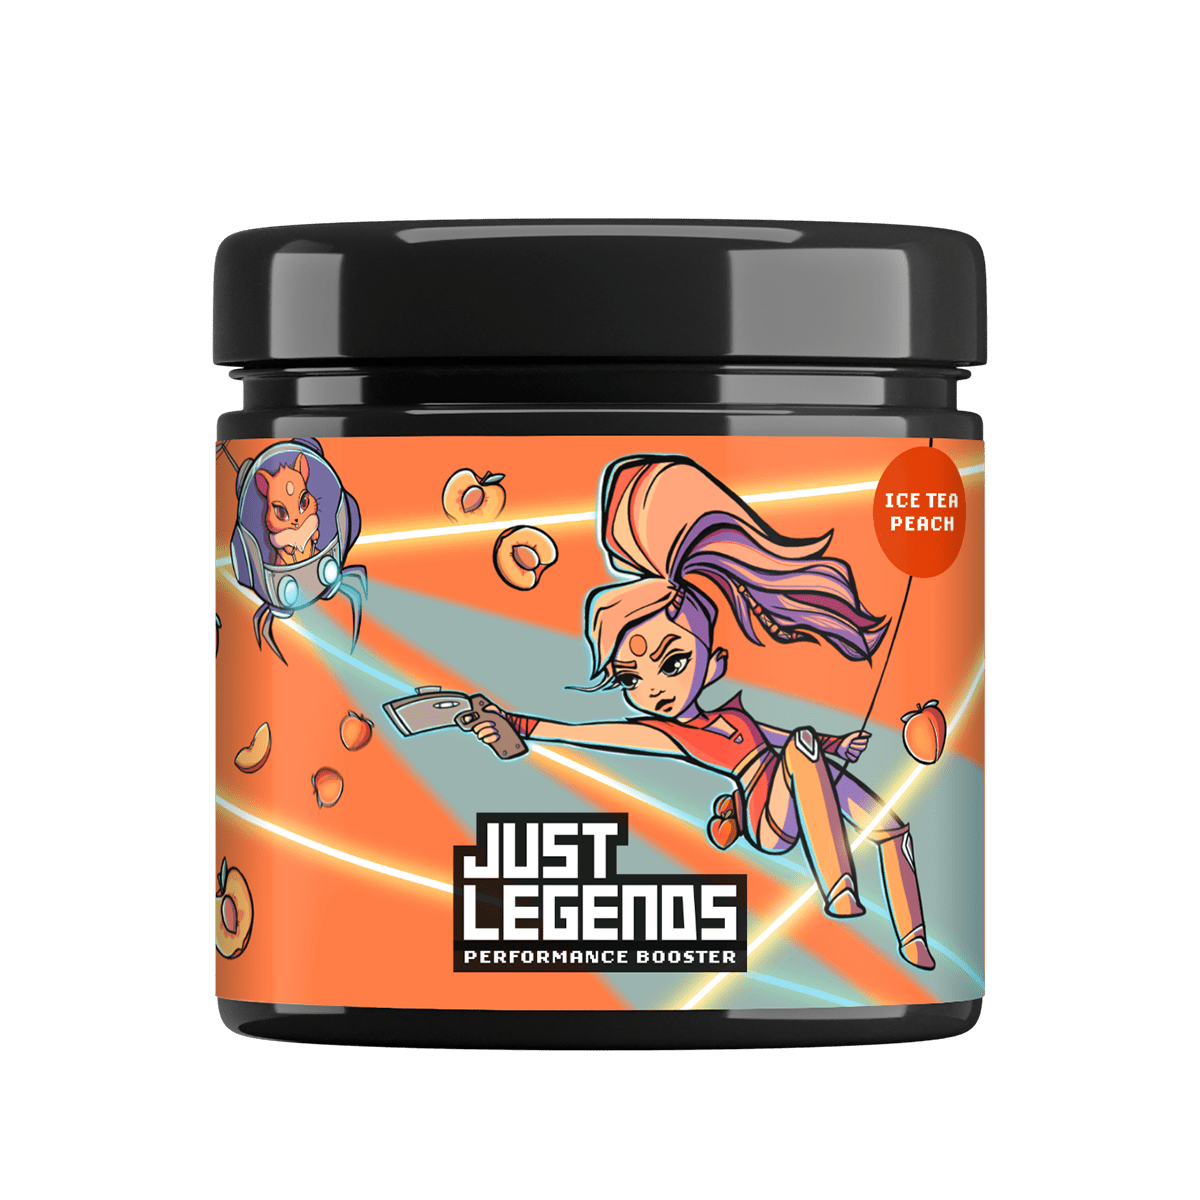 Just Legends Performance Booster | Funktionaler, veganer Cross Sell auf Pulverbasis ohne Zucker, mit wenig Kalorien, vielen Vitaminen und natürlichen Aromen.